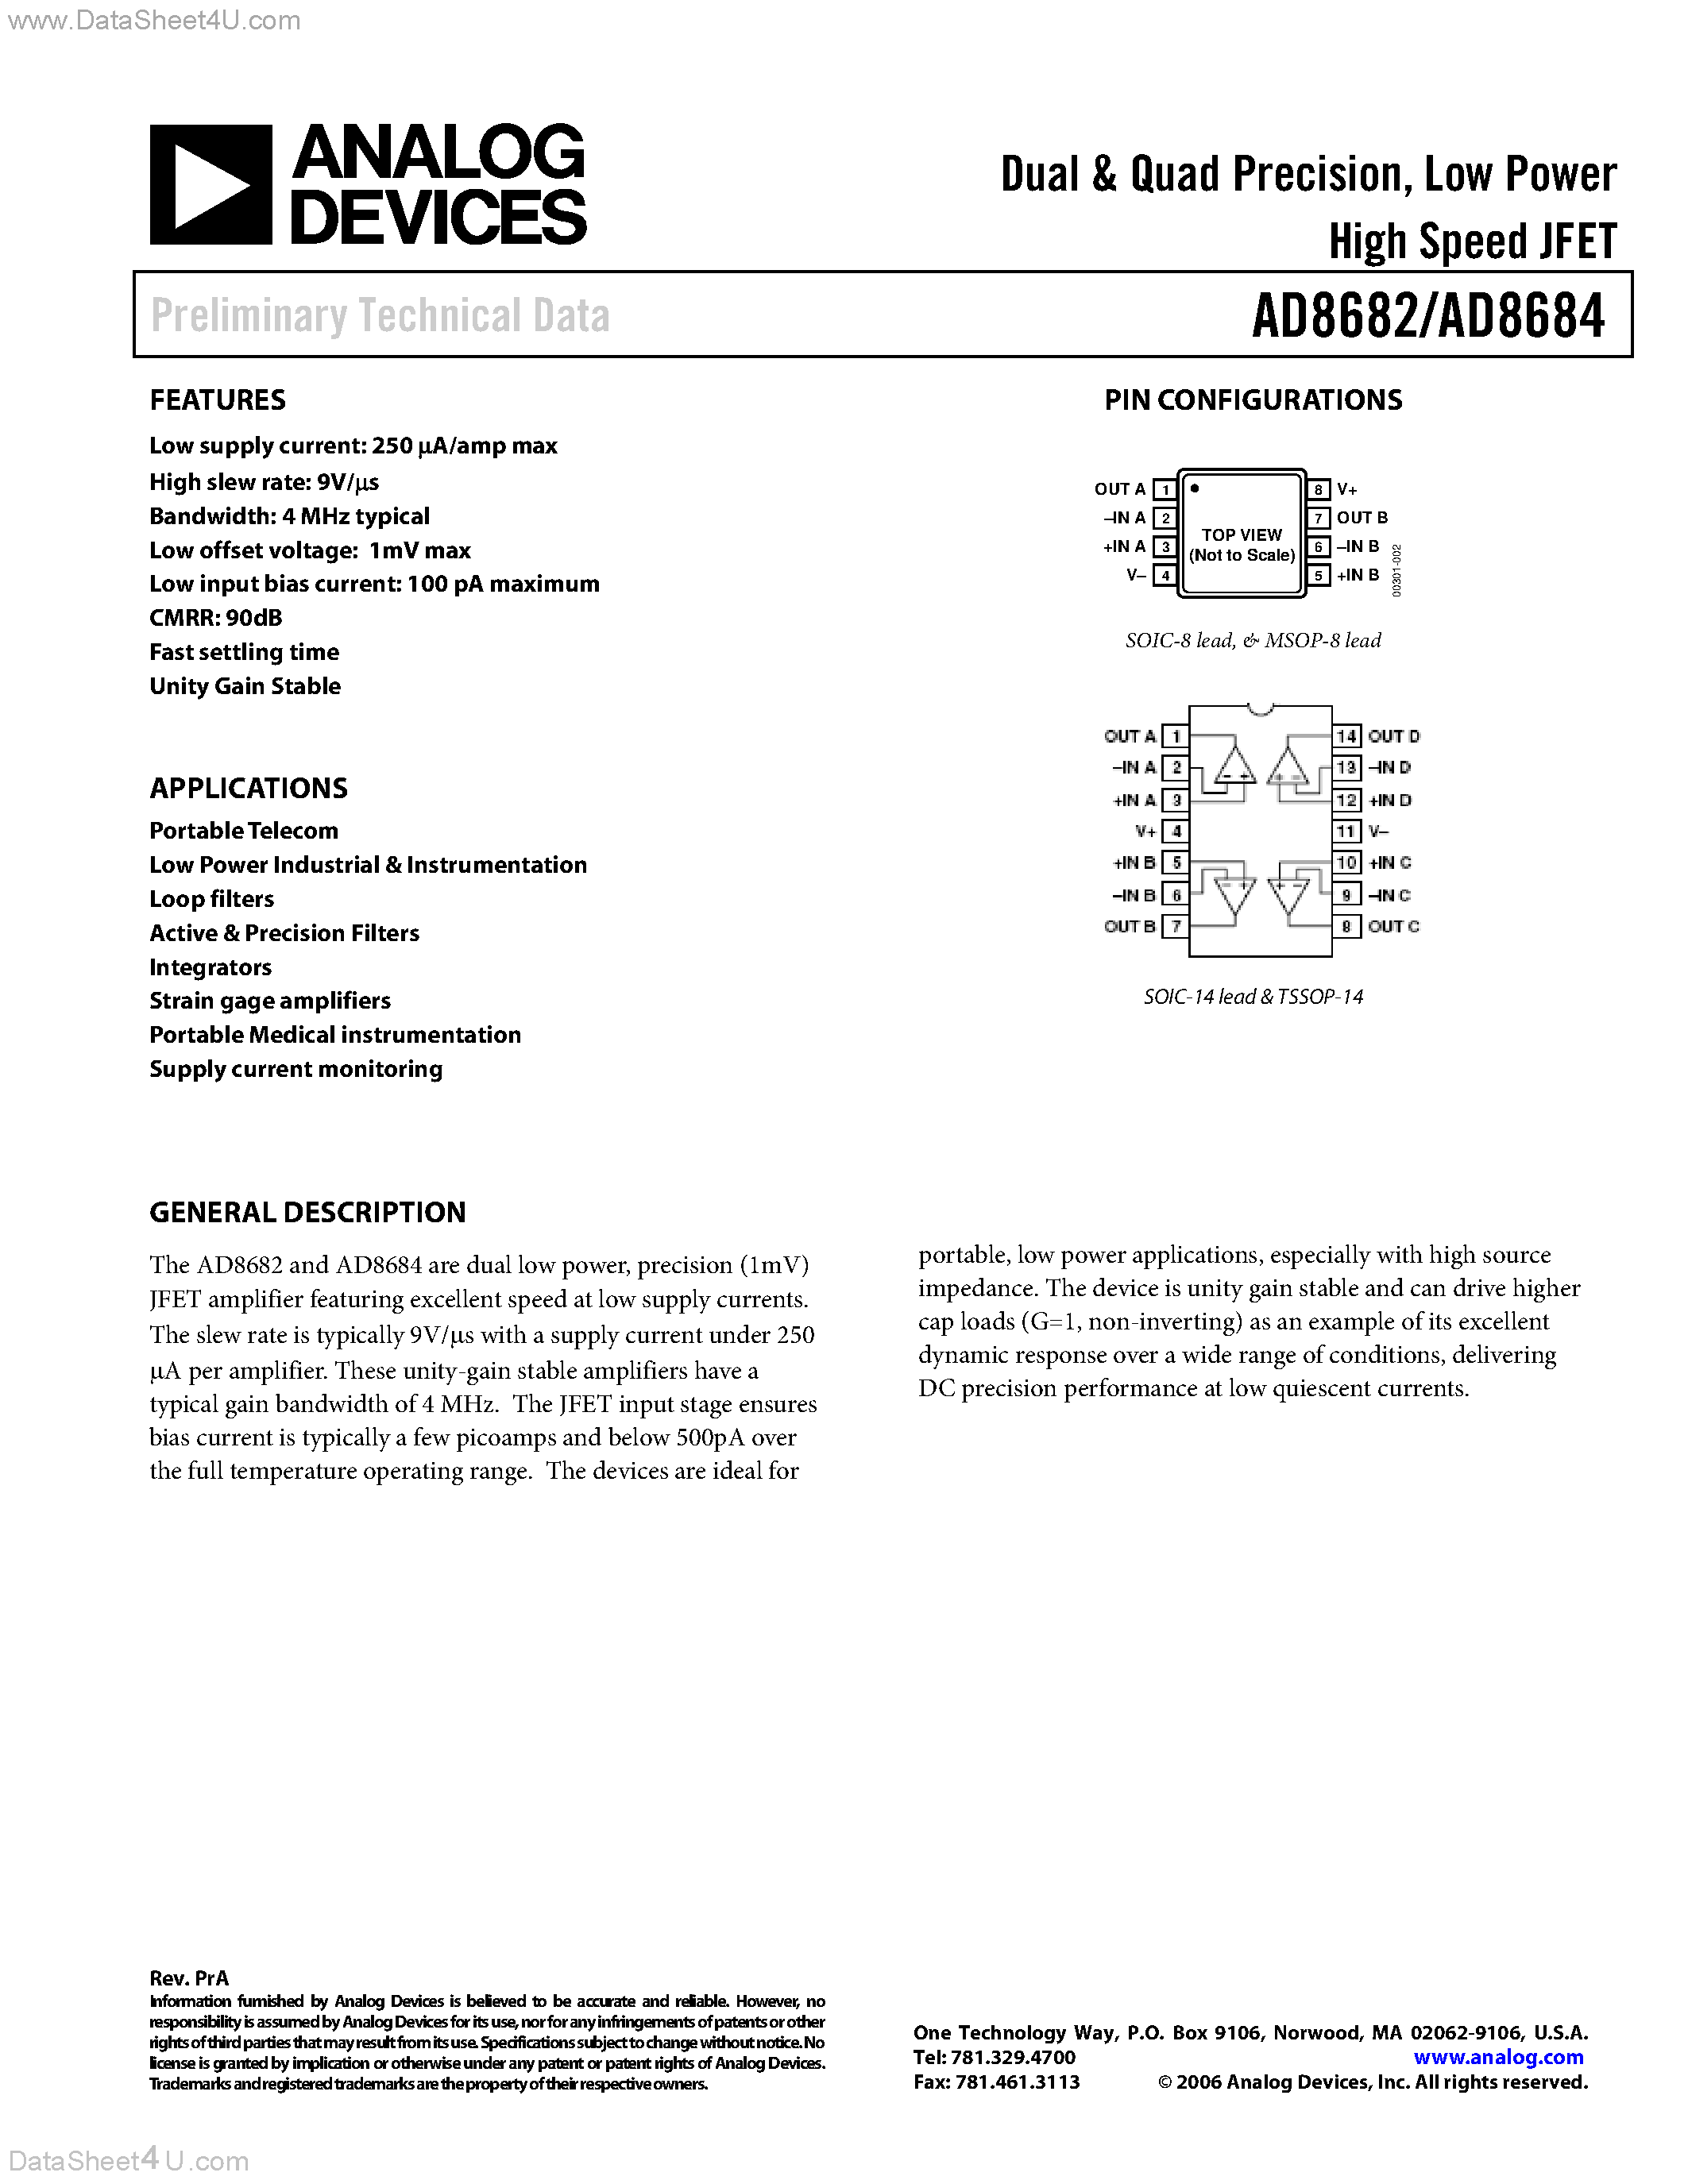 Даташит AD8682 - (AD8682 / AD8684) Dual & Quad Precision JFET страница 1